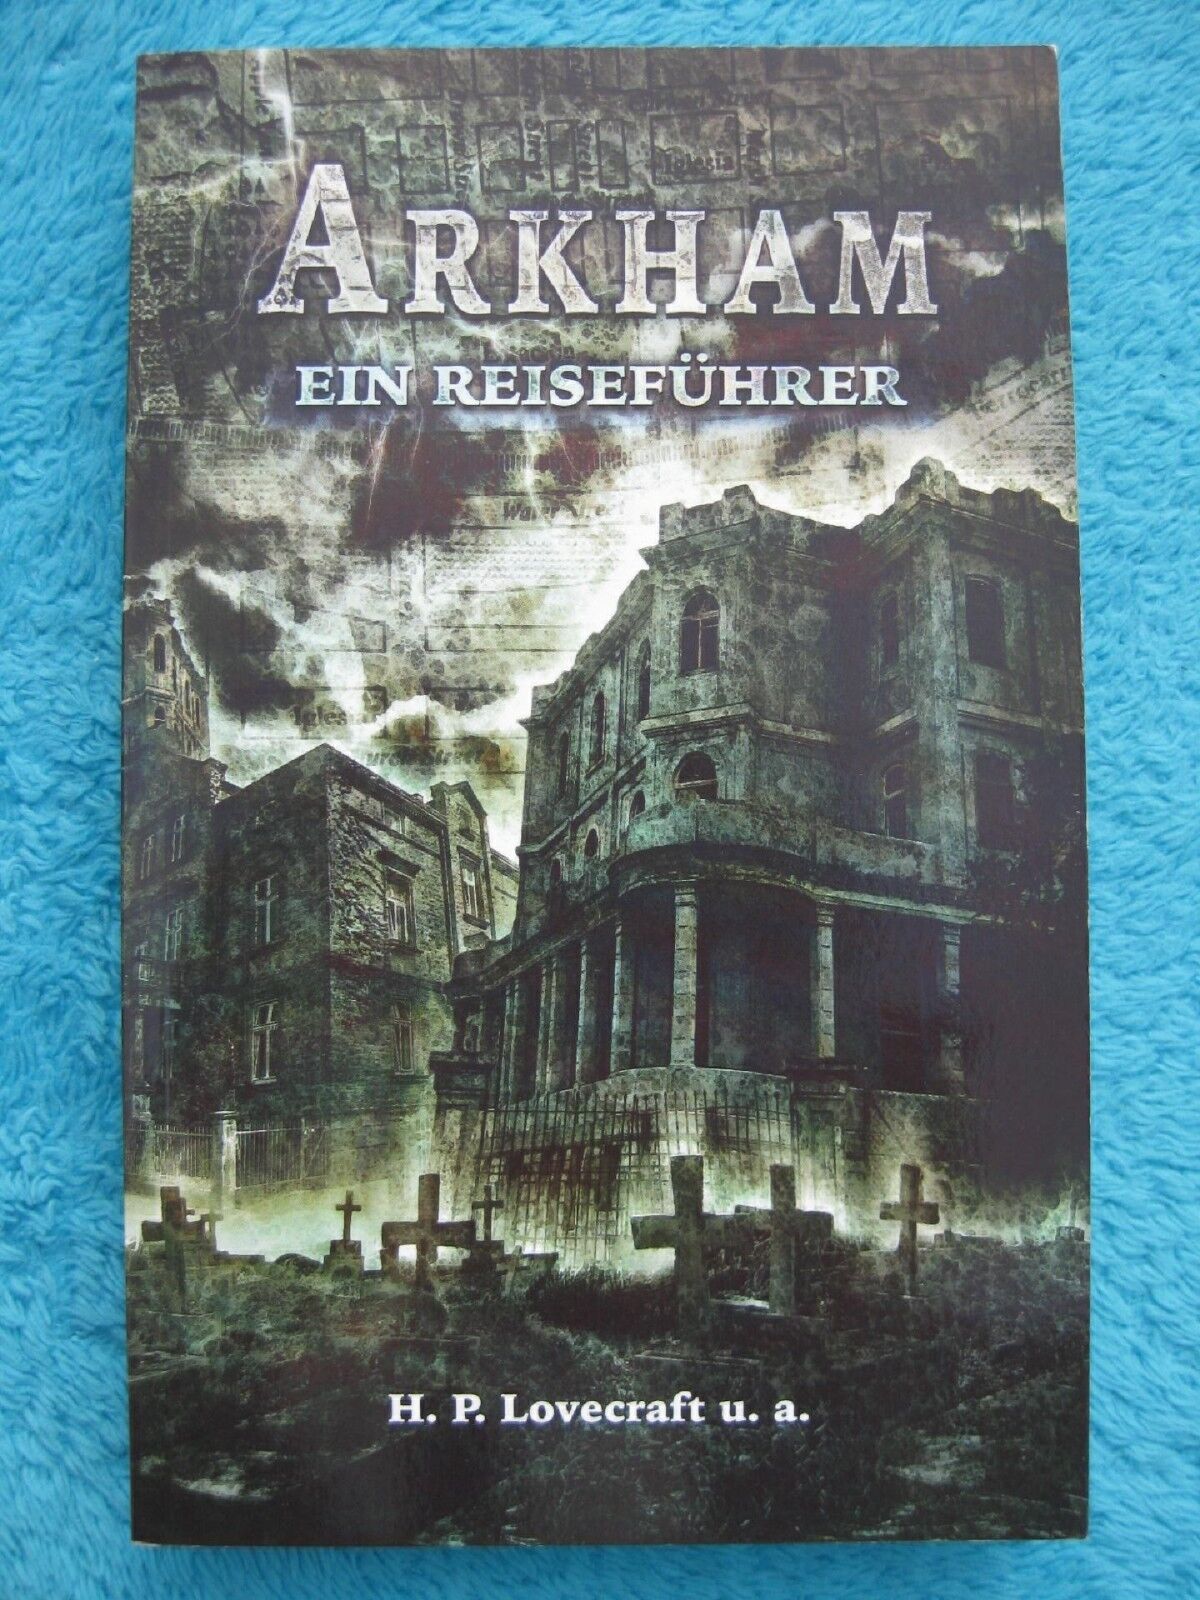 ARKHAM - Ein Reiseführer H.P. LOVECRAFT BASILISK 2006 LIMITIERT 978-3935706247 - H.P. Lovecraft